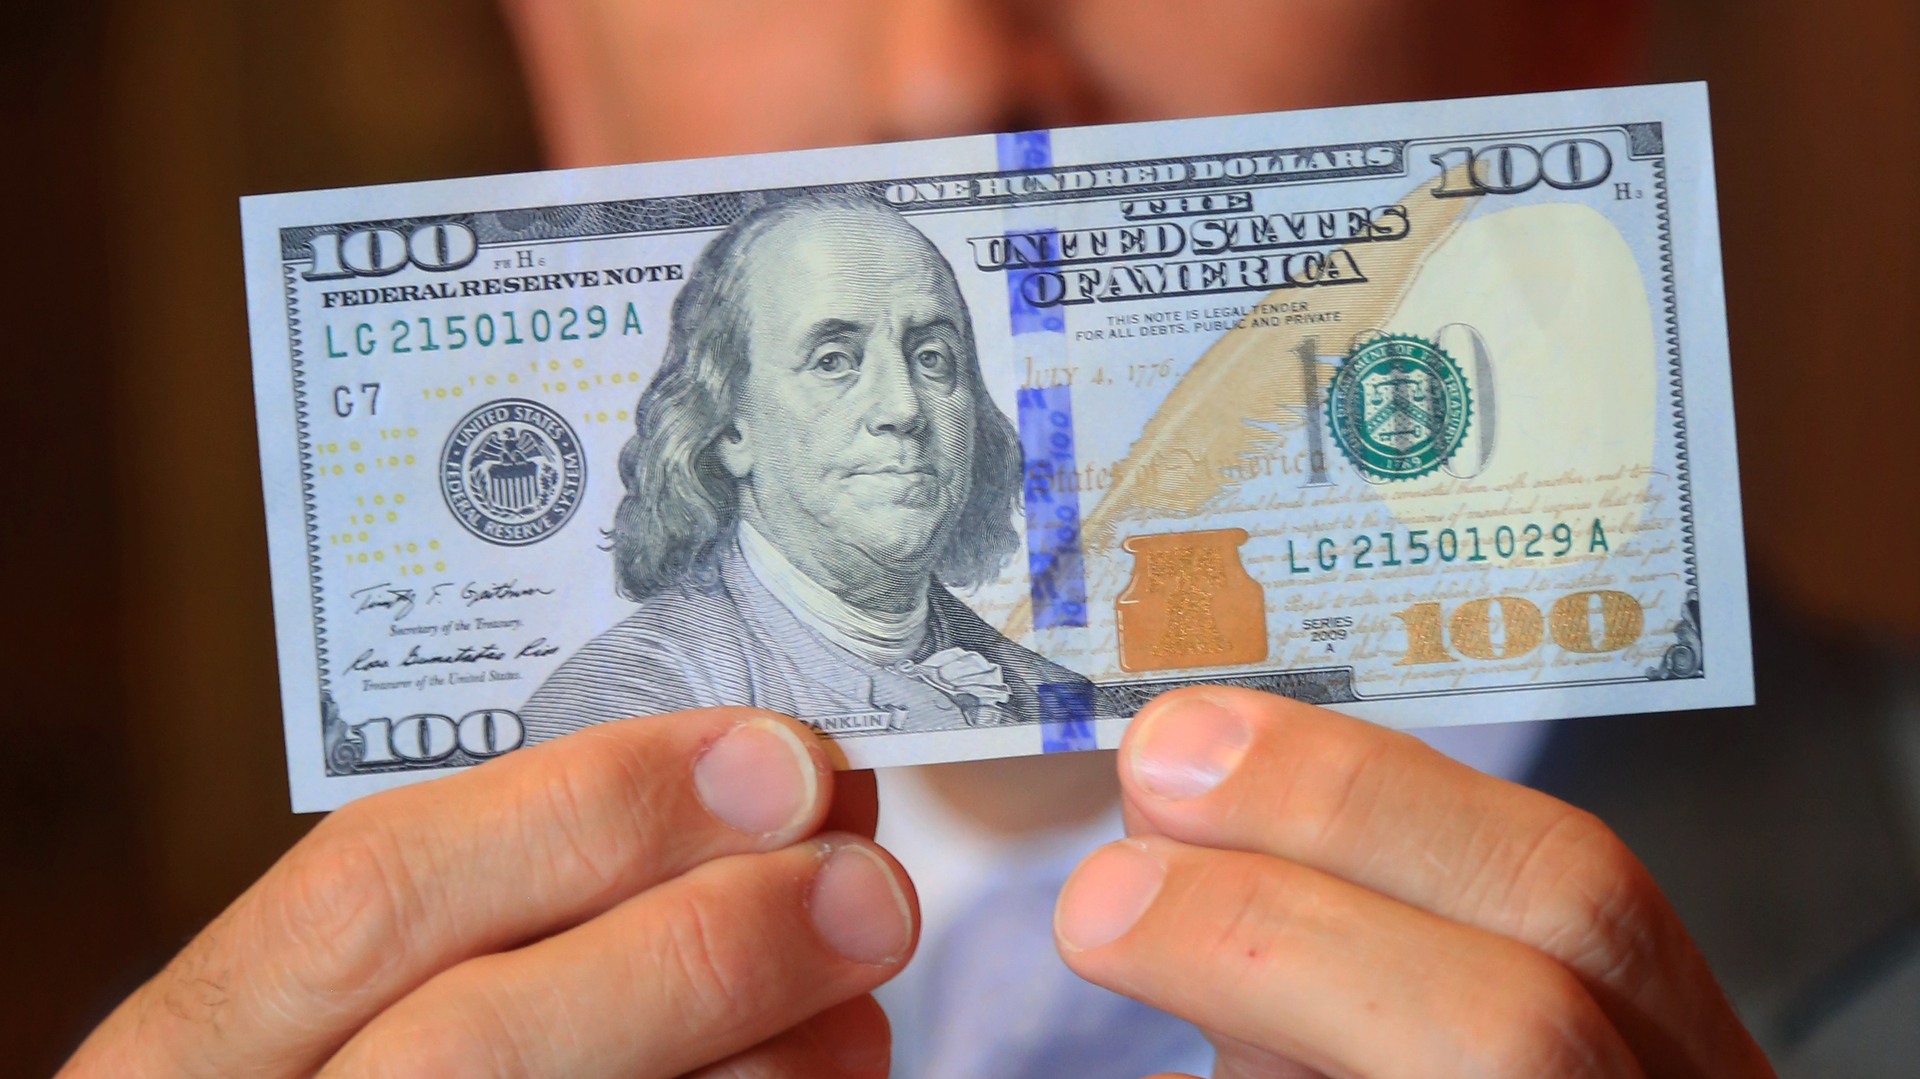 Dólar: Cómo saber si son falsos los billetes de 100 más antiguos